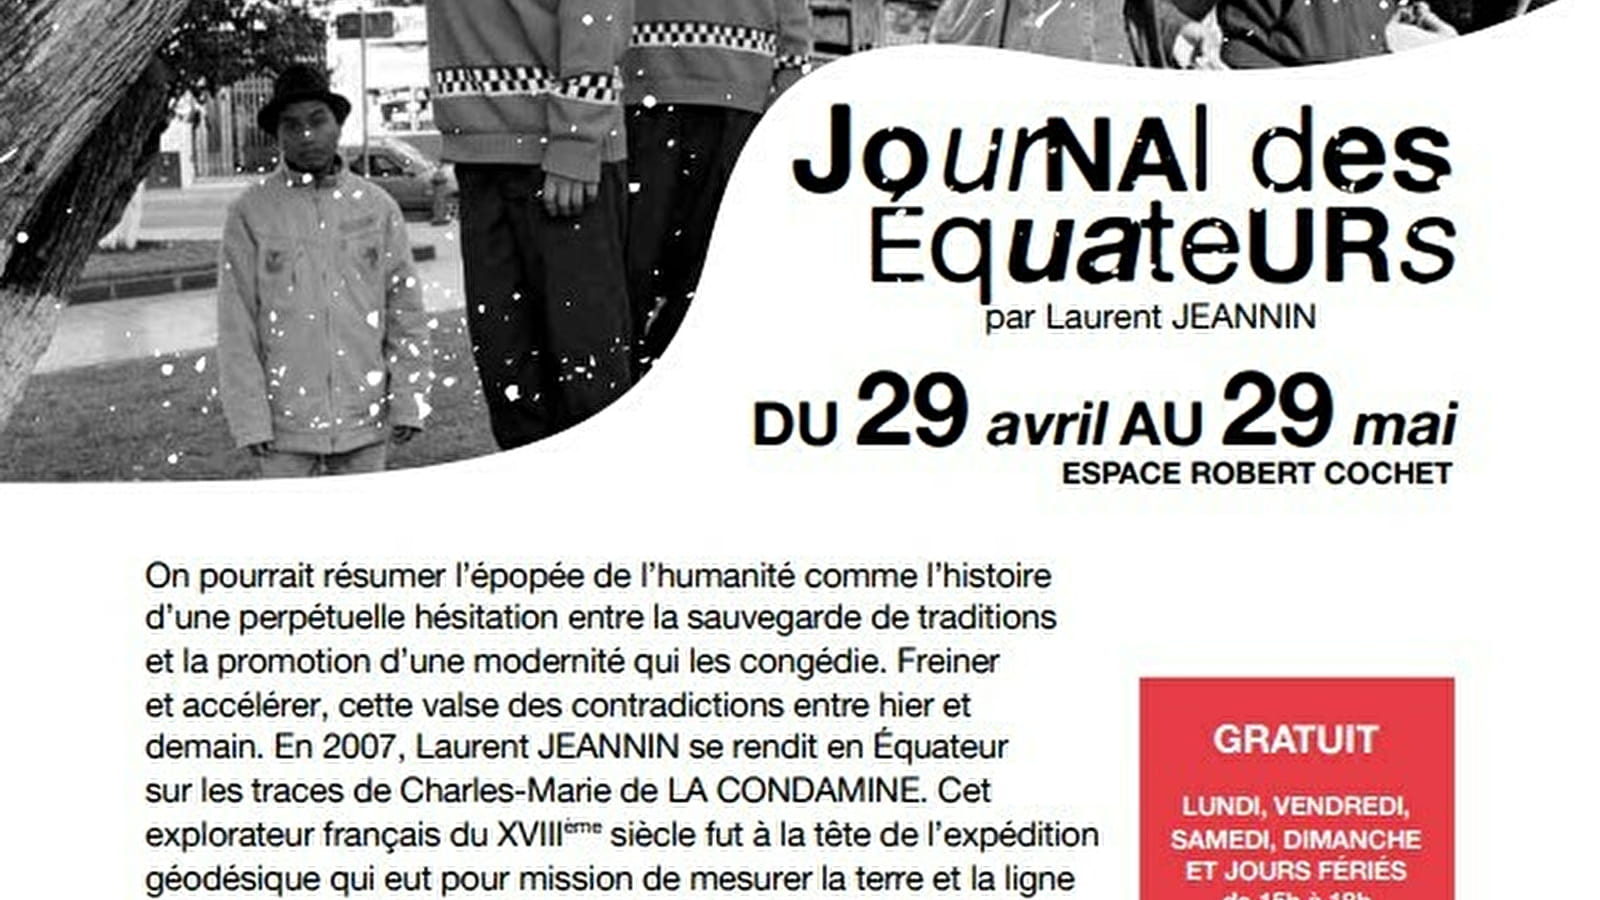 Exhibition 'Journal des Equateurs